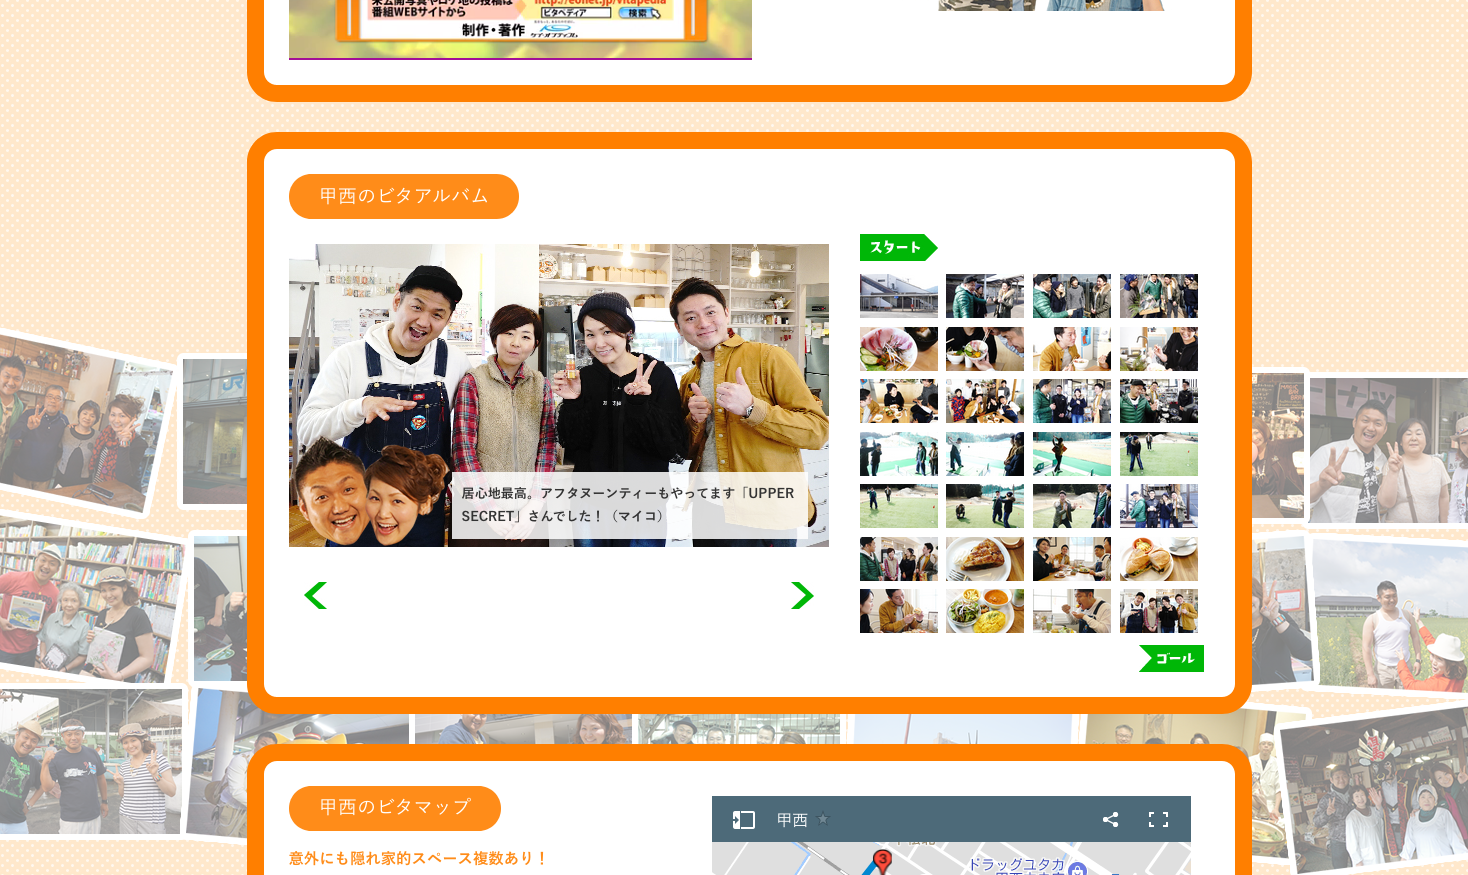 甲西駅前特集、UPPER SECRETがeo光チャンネルのビタペディアでお店が紹介されていました。